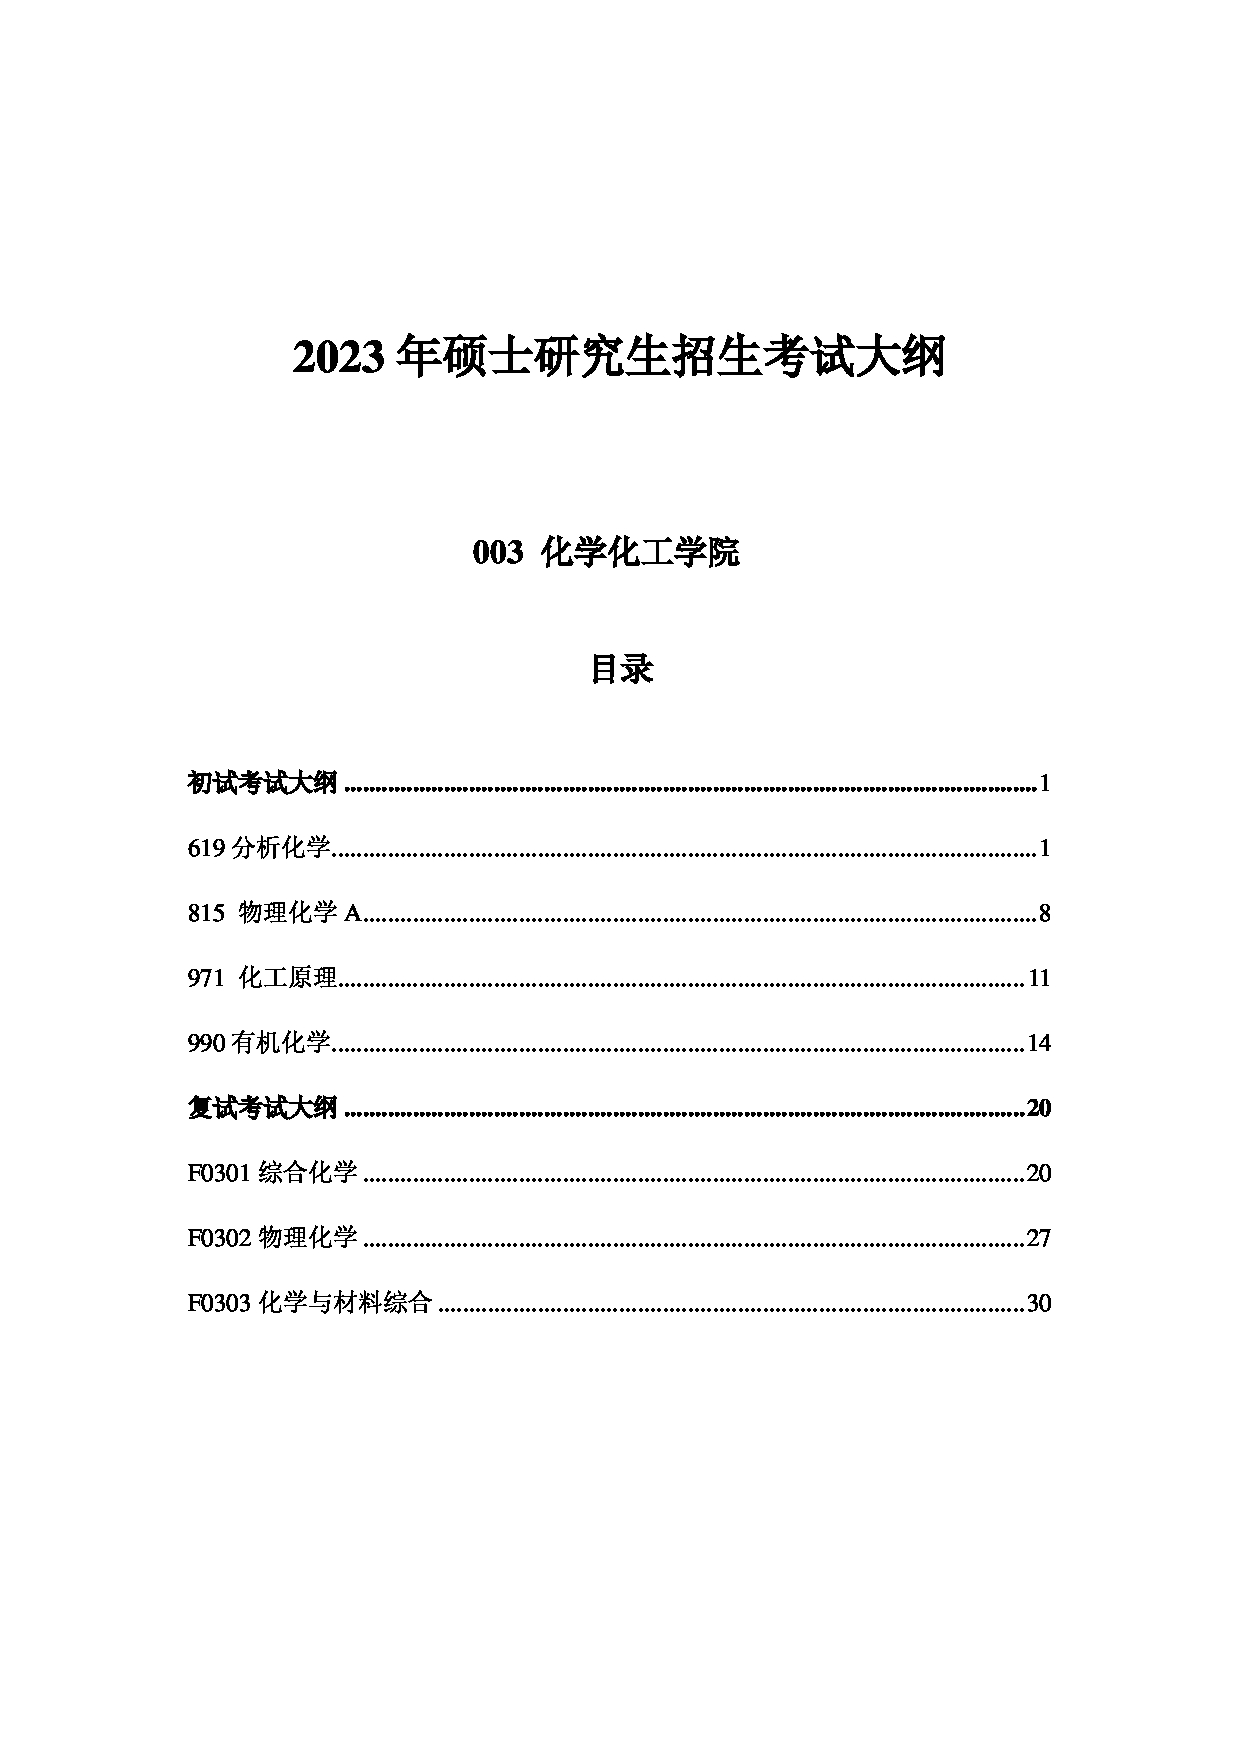 2023考研大纲：中国海洋大学2023年考研 003化学化工学院 考试大纲第1页